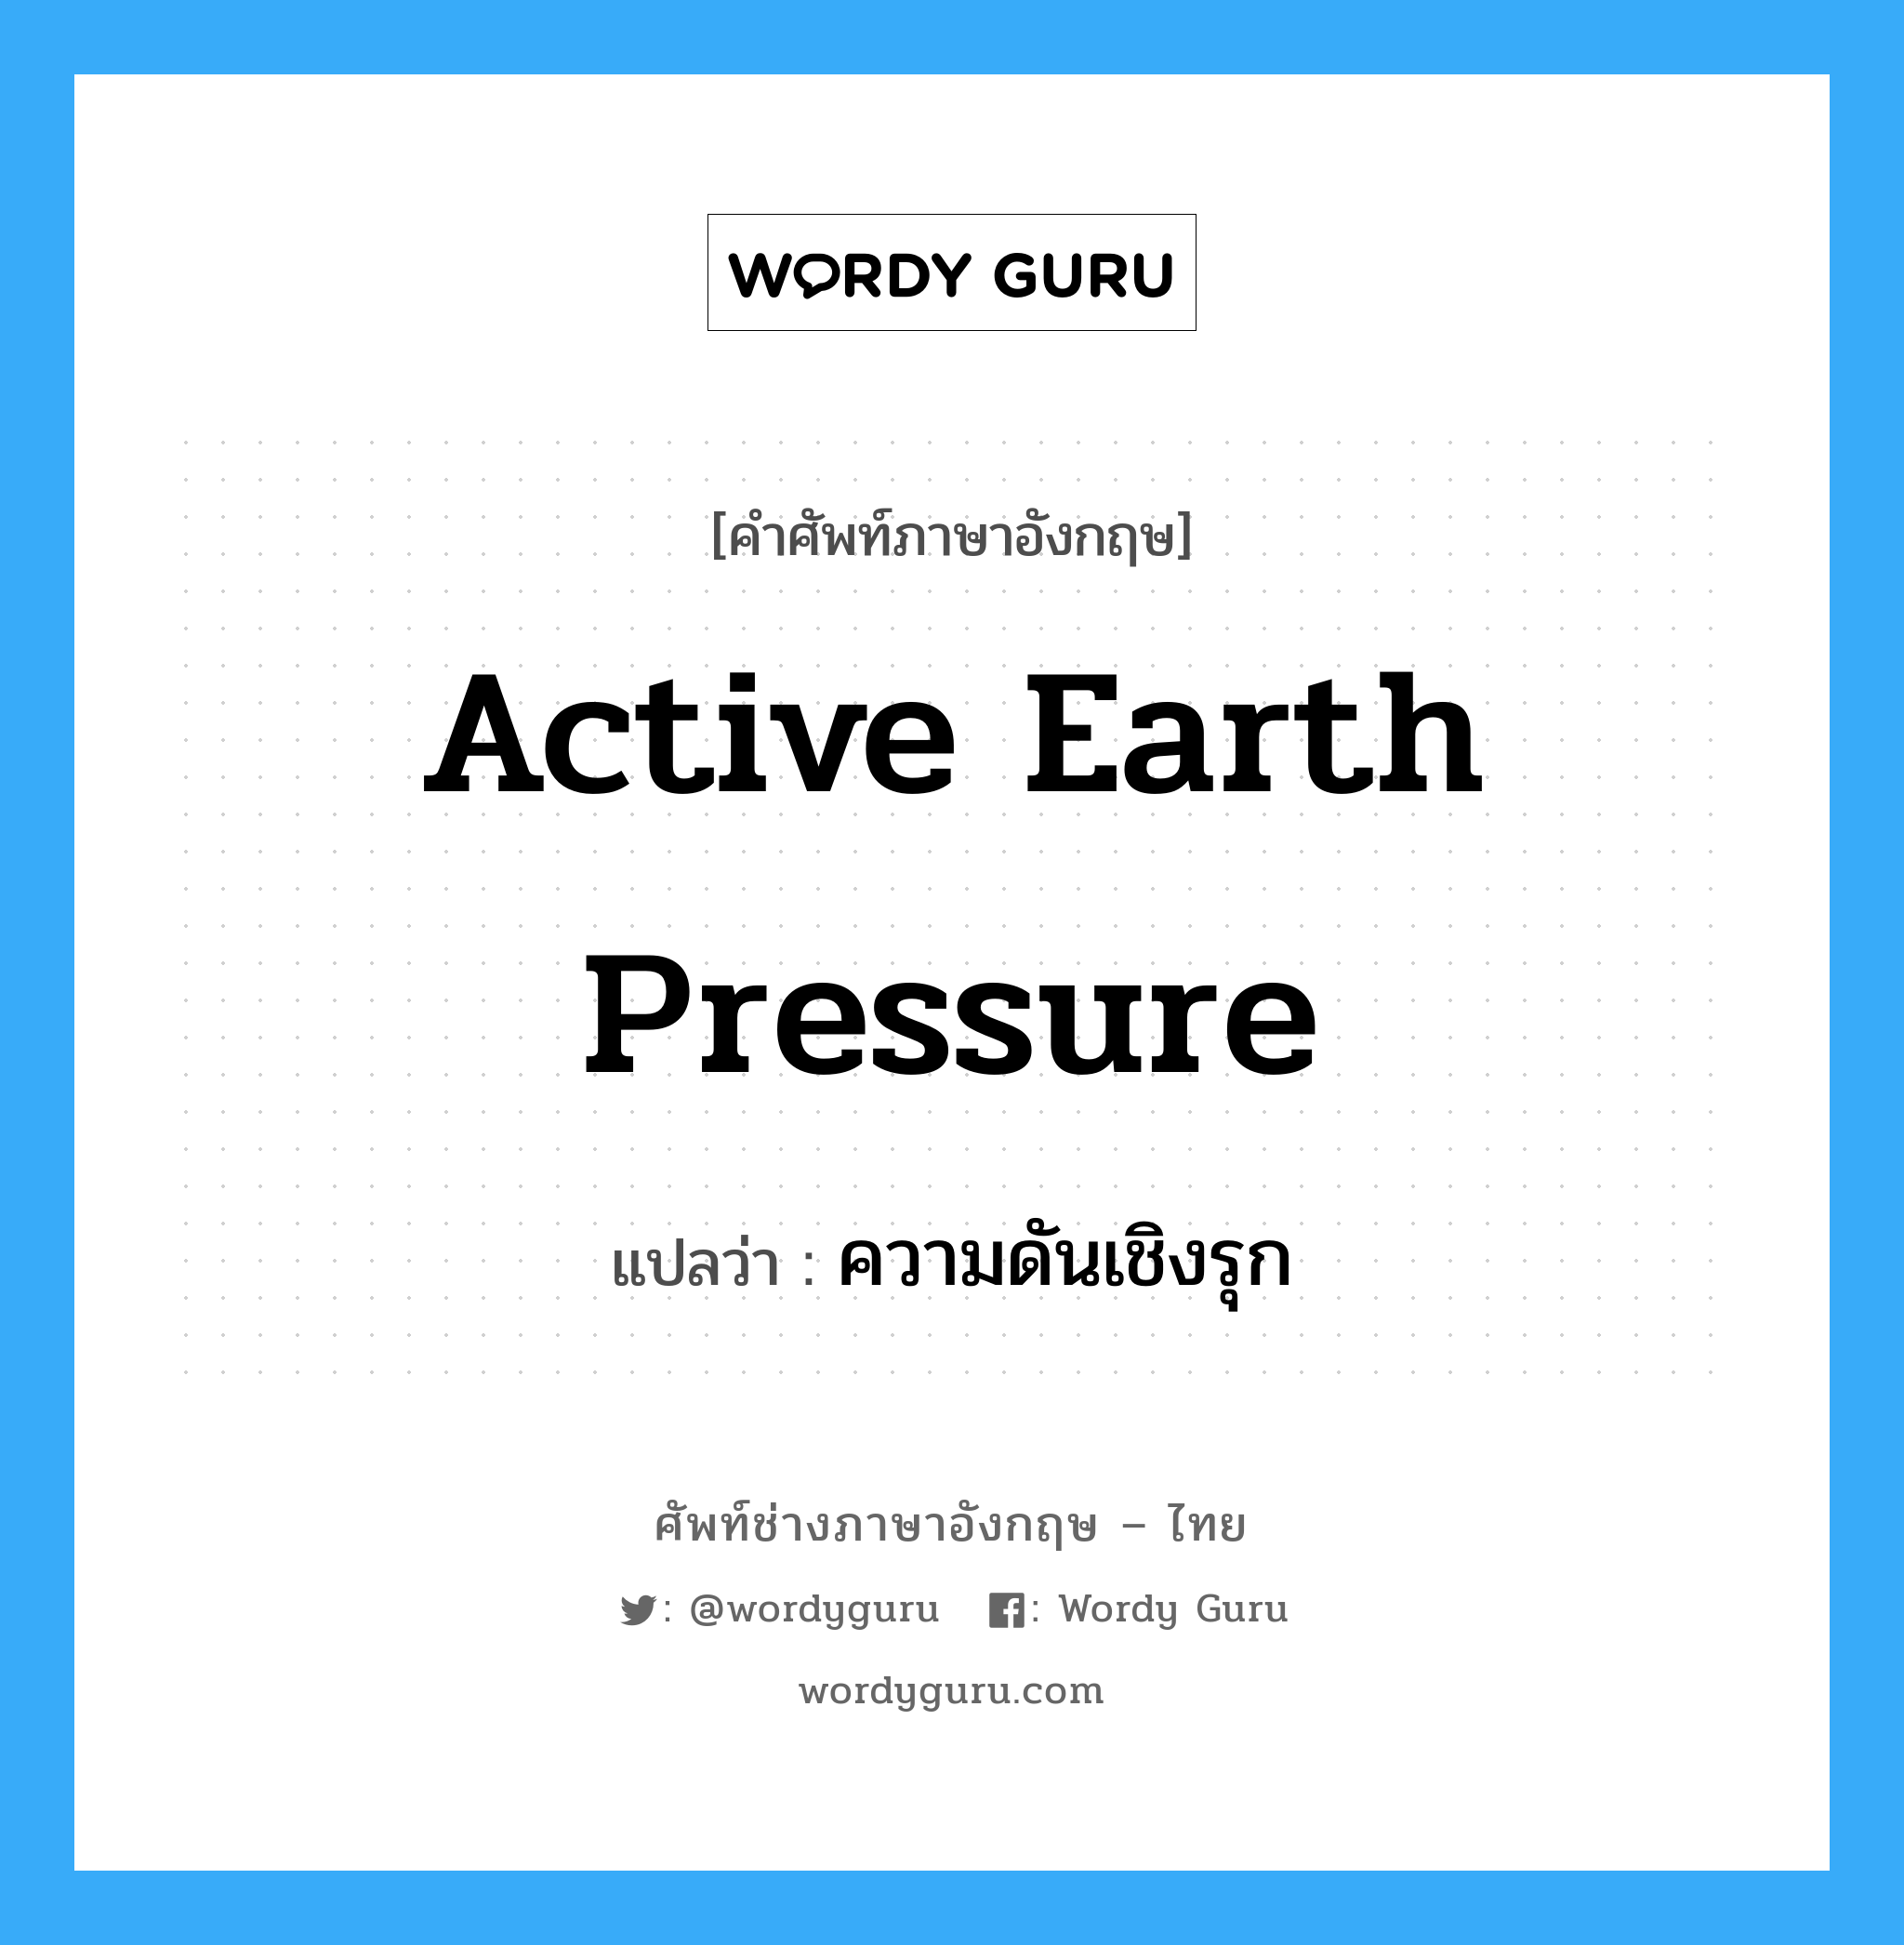 ความดันเชิงรุก ภาษาอังกฤษ?, คำศัพท์ช่างภาษาอังกฤษ - ไทย ความดันเชิงรุก คำศัพท์ภาษาอังกฤษ ความดันเชิงรุก แปลว่า active earth pressure